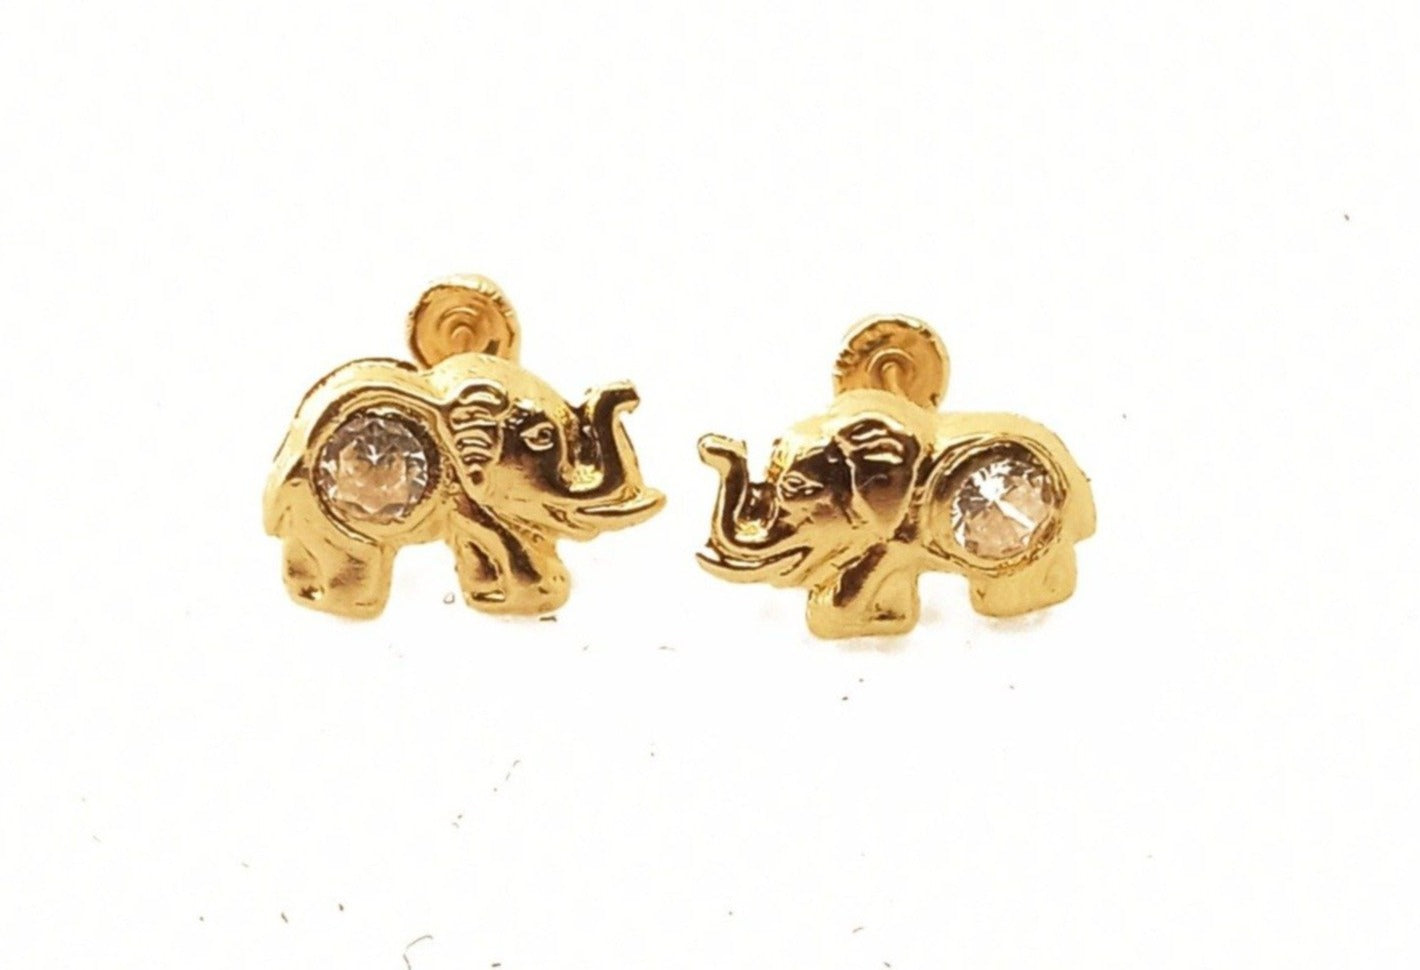 14K Yellow Gold Elephant ZC Stud Earrings